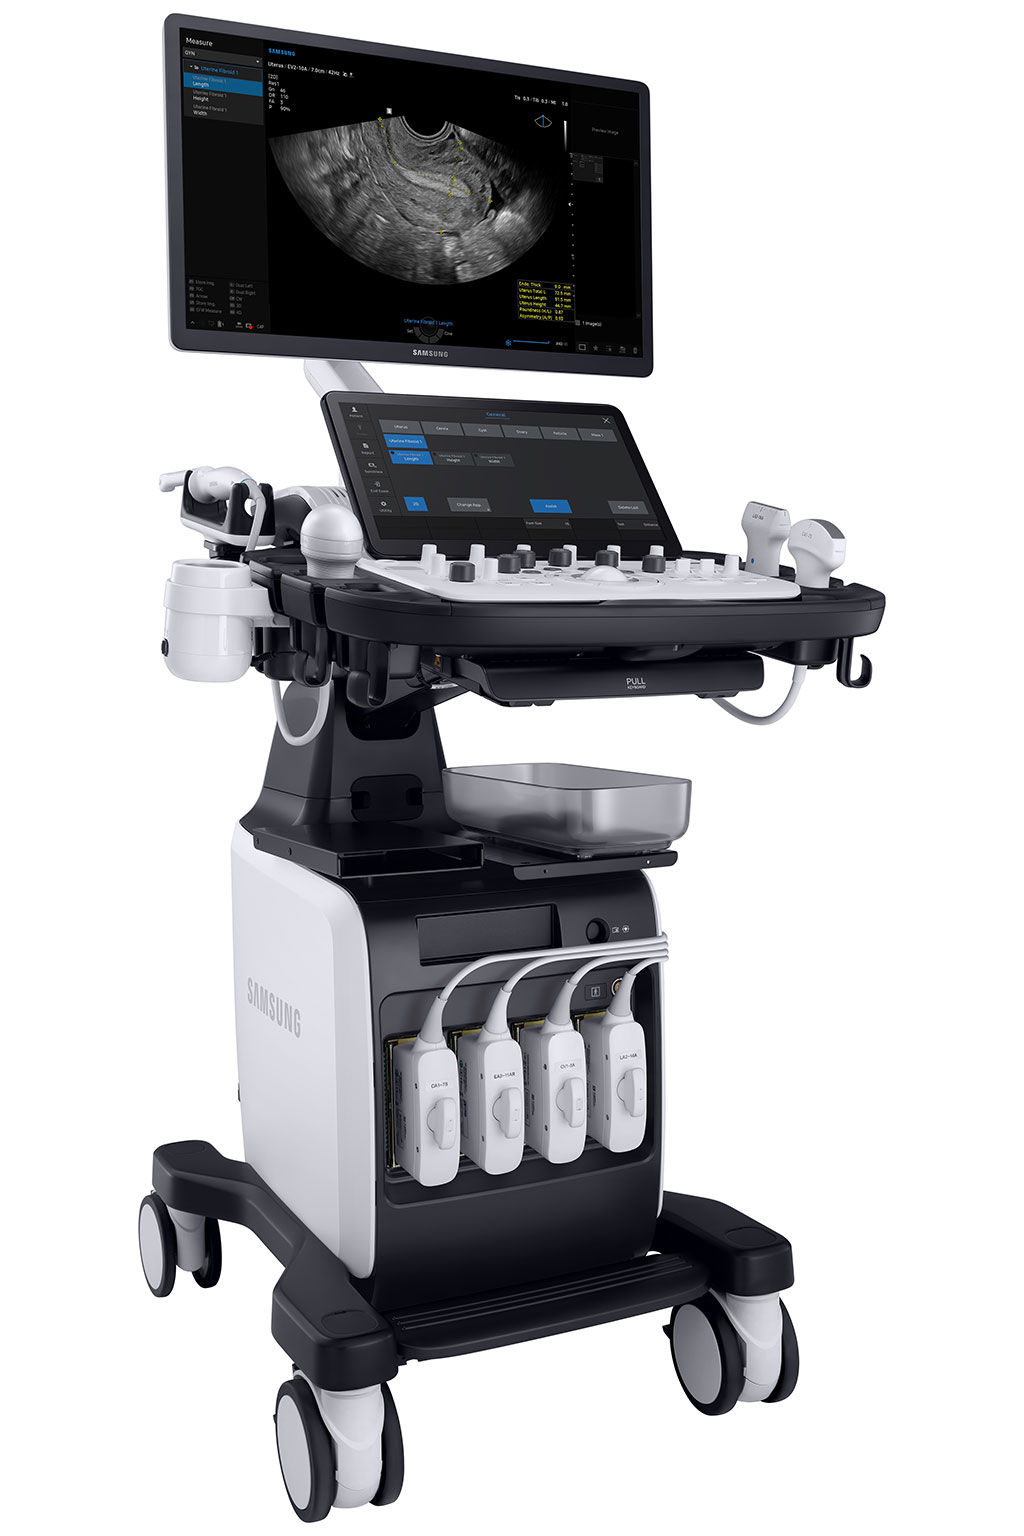 Imagen: El sistema de ultrasonido V7 ofrece una experiencia de diagnóstico multifacética (Fotografía cortesía de Samsung)